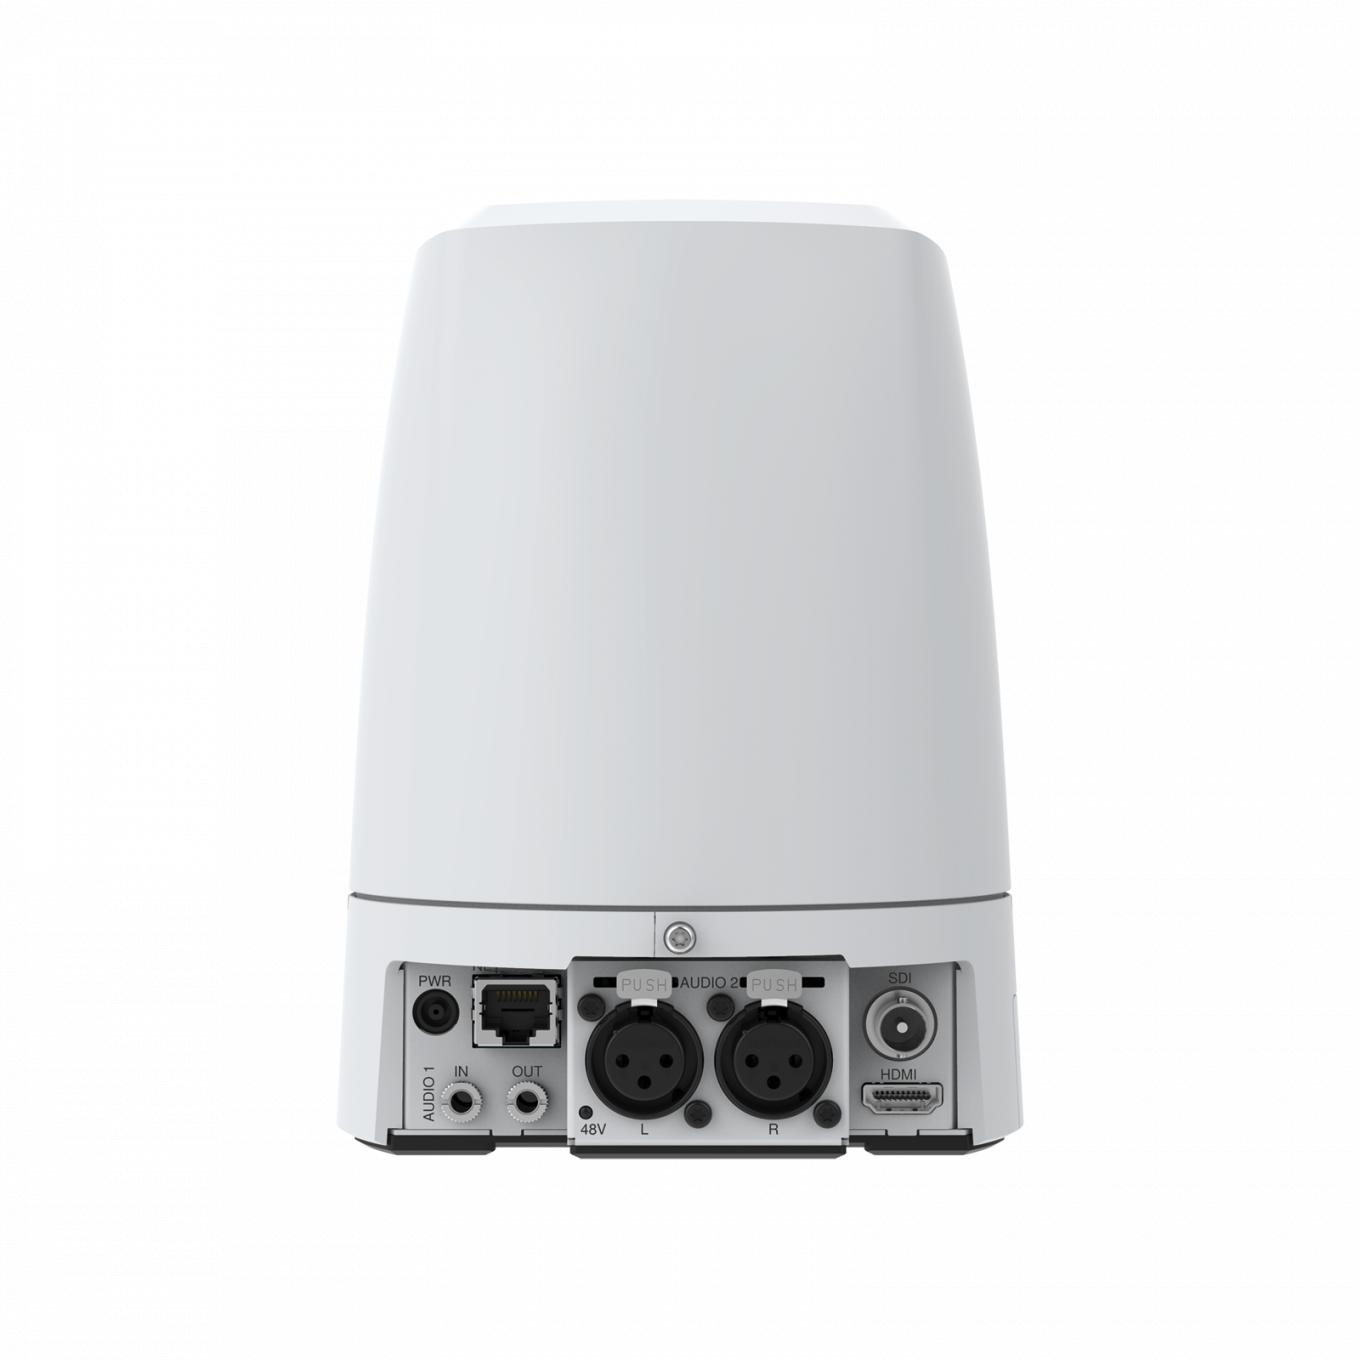 Сетевая камера AXIS V5925 PTZ Network Camera поддерживает VISCA и VISCA через IP-связь